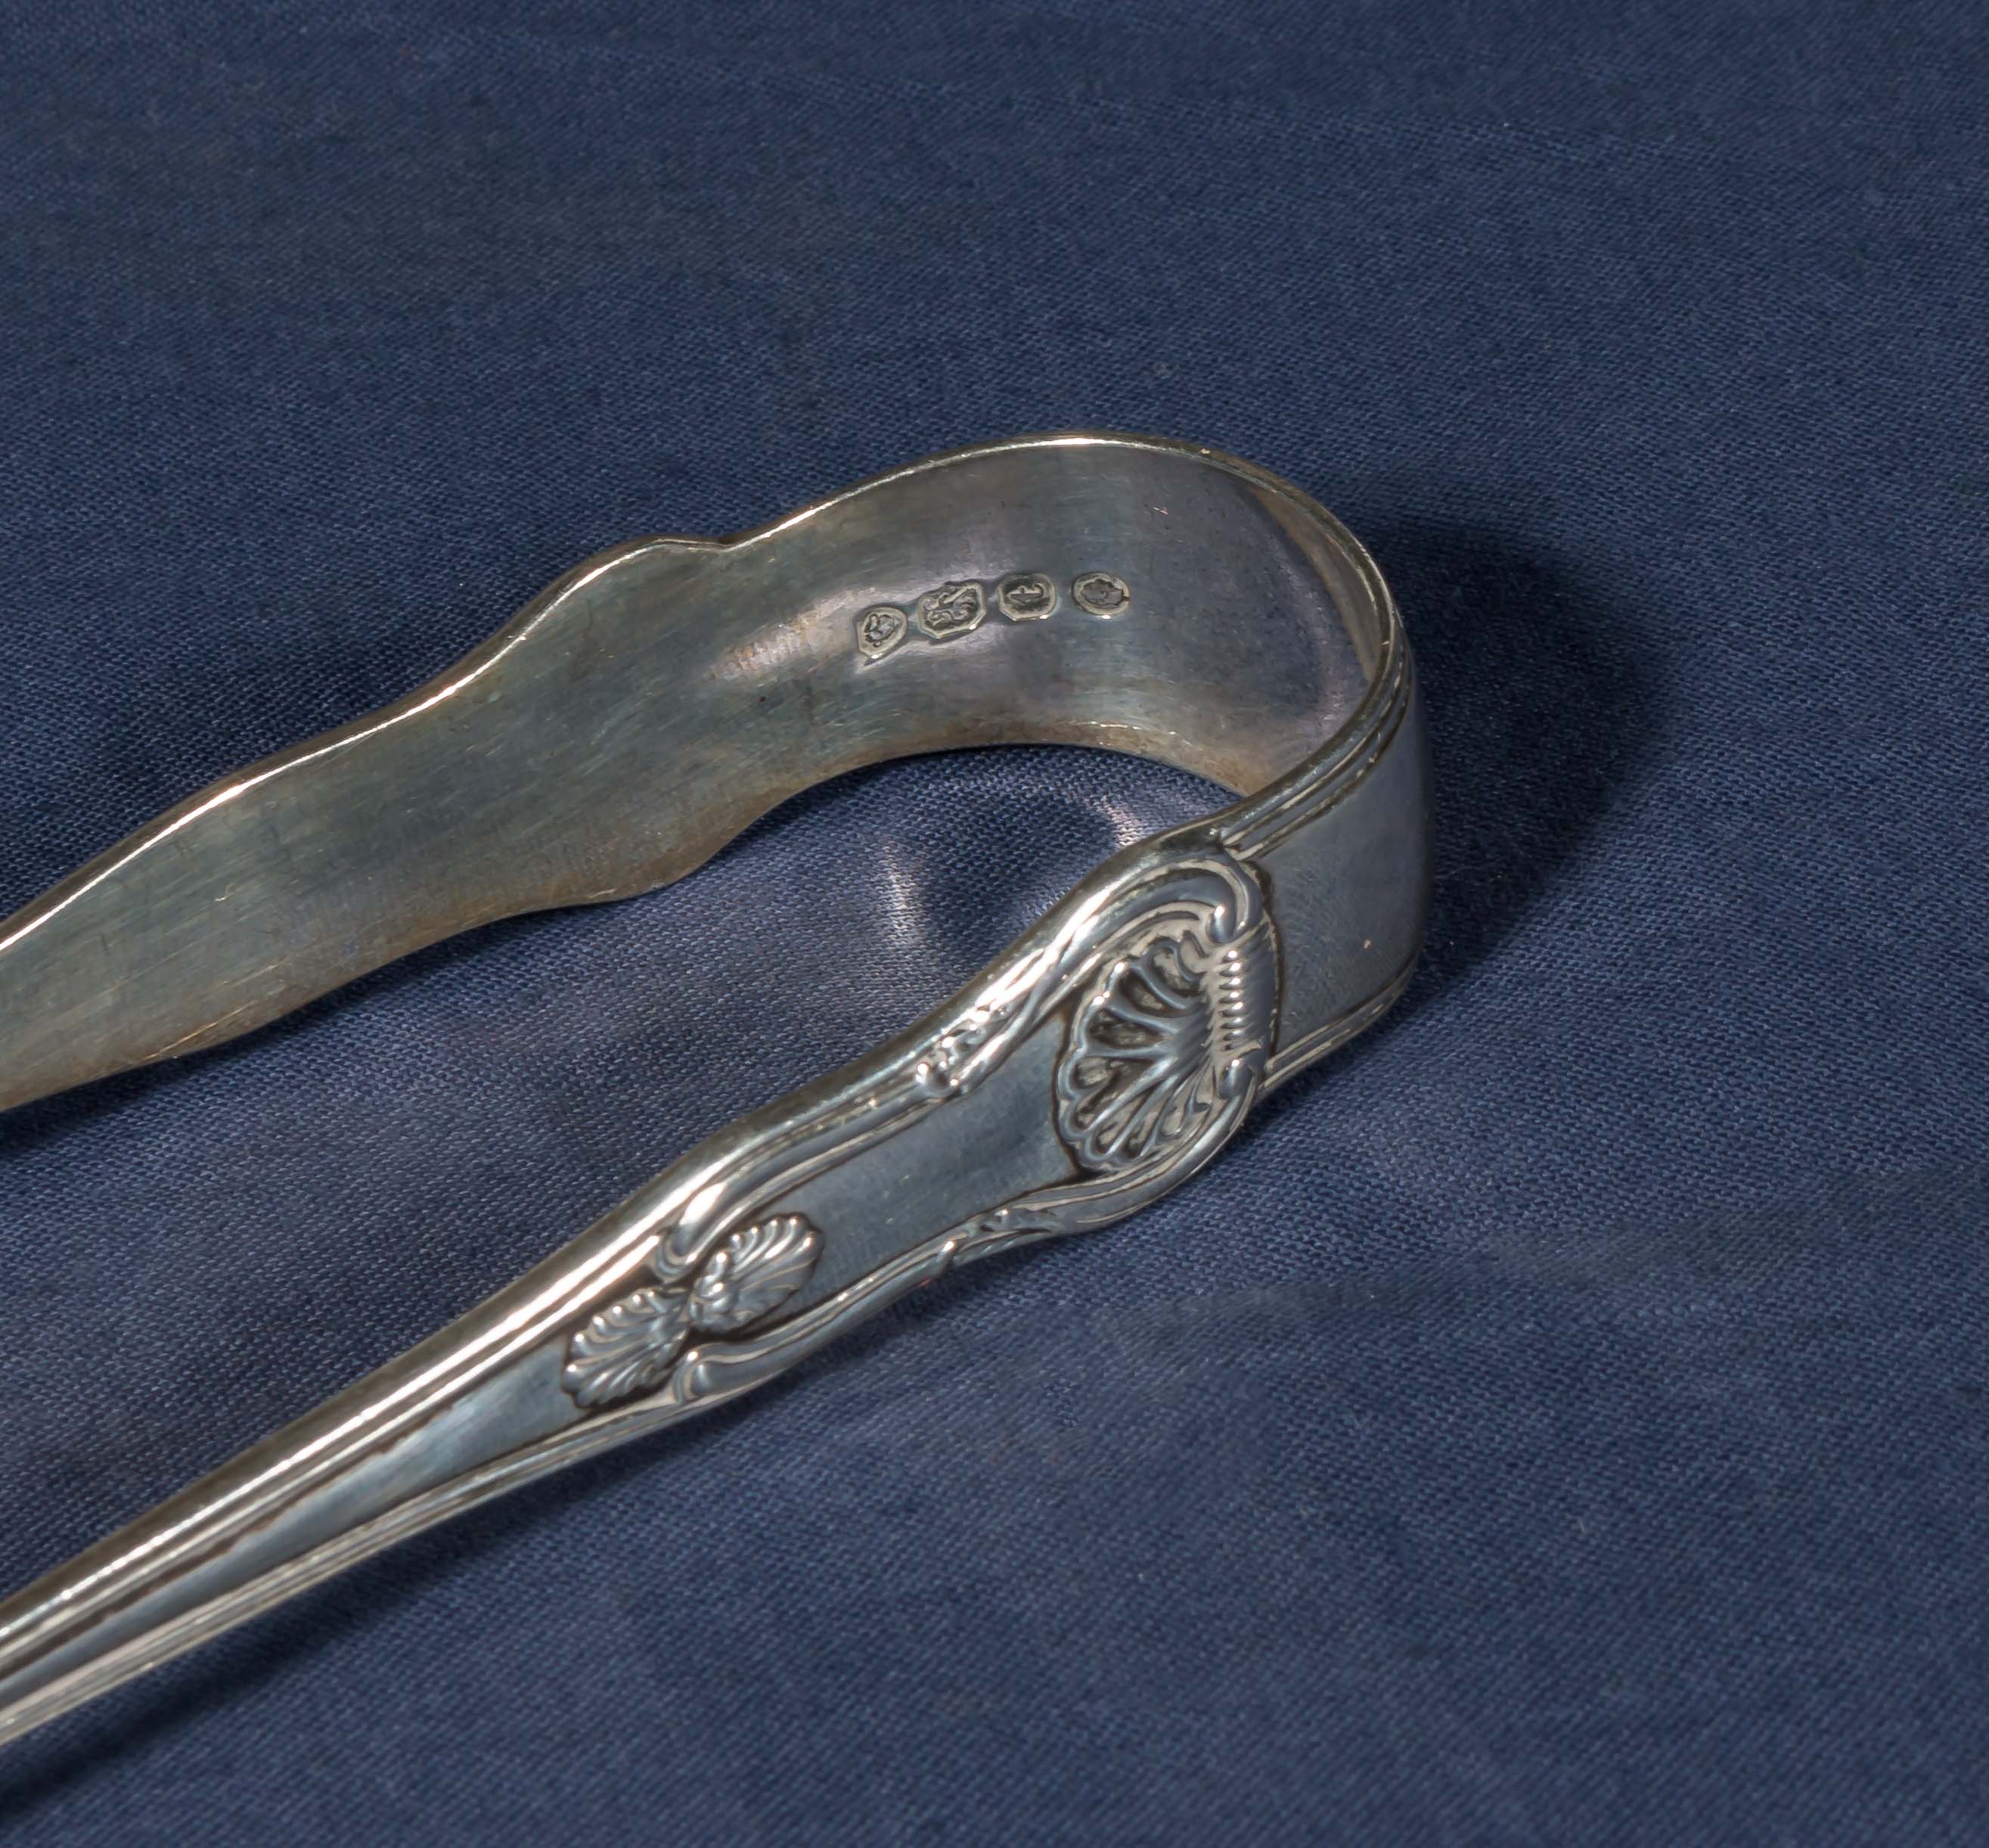 A pair of silver sugar tongs - Image 2 of 2